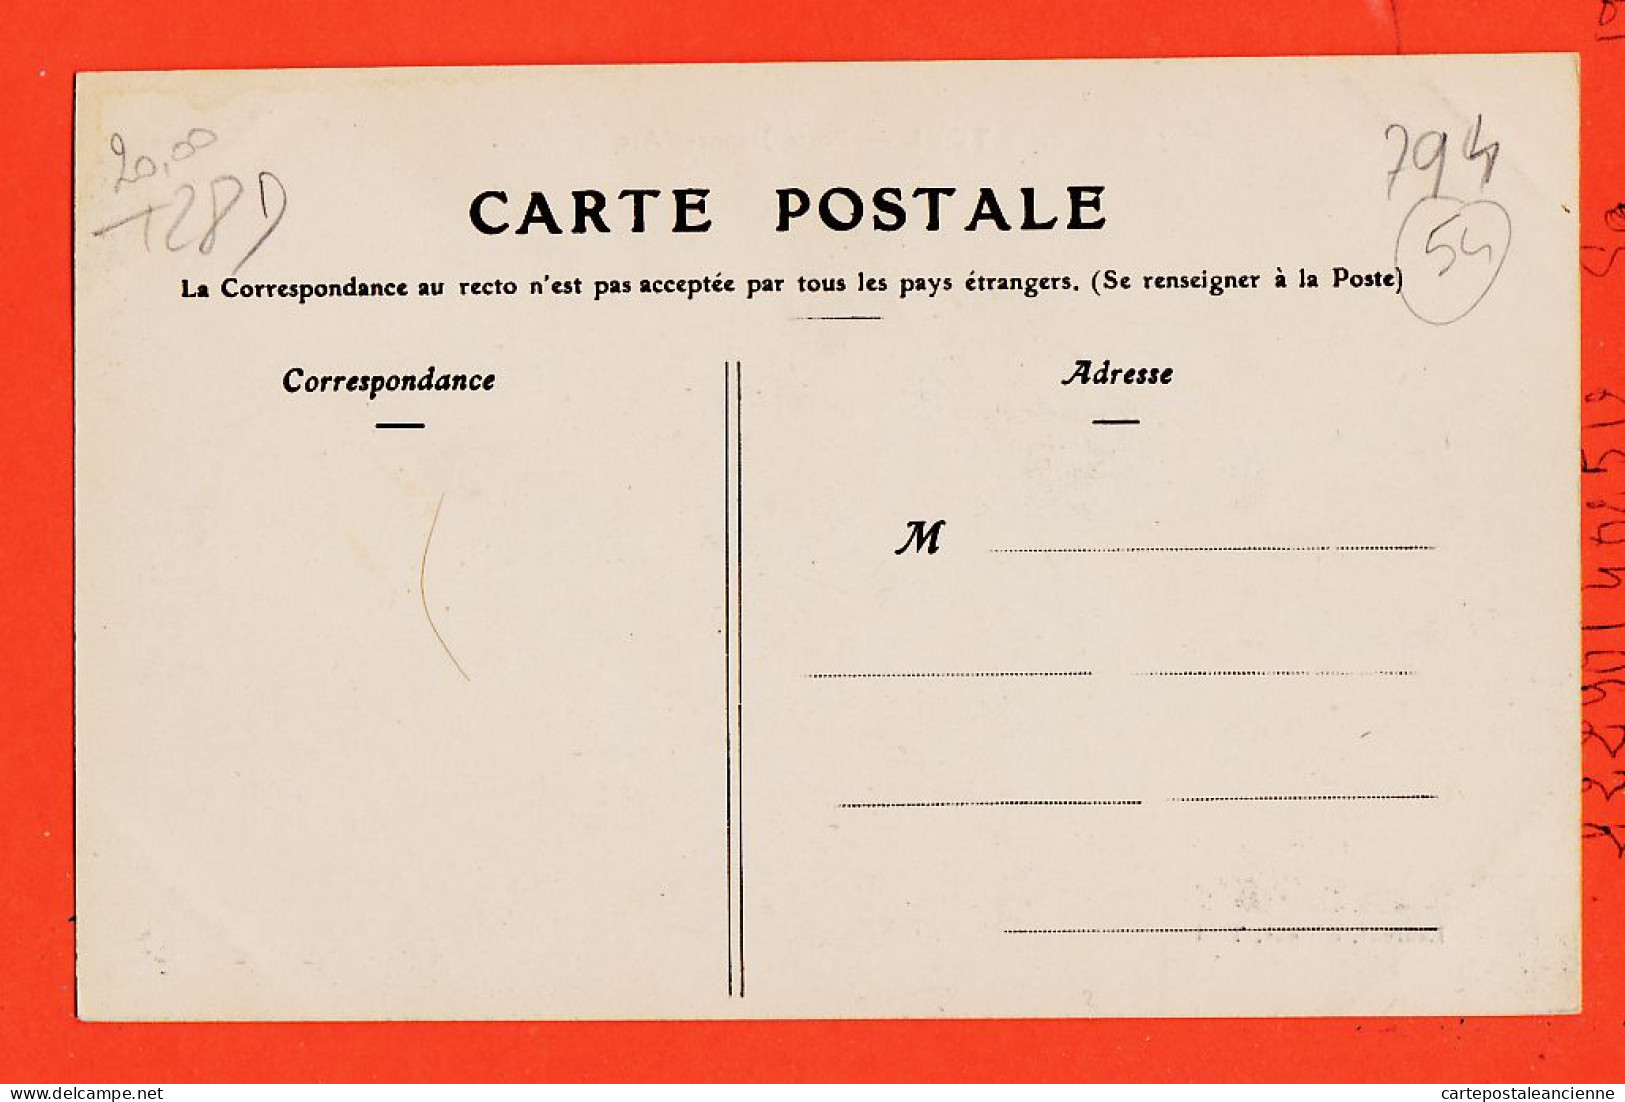 09898 / ⭐ TOUL 54-Meurthe Moselle  ◉ Semence Tabac Comptoir Porte Nouvelle Jeanne ARC  1910s ◉ Editeur P. GRAVE ? - Toul